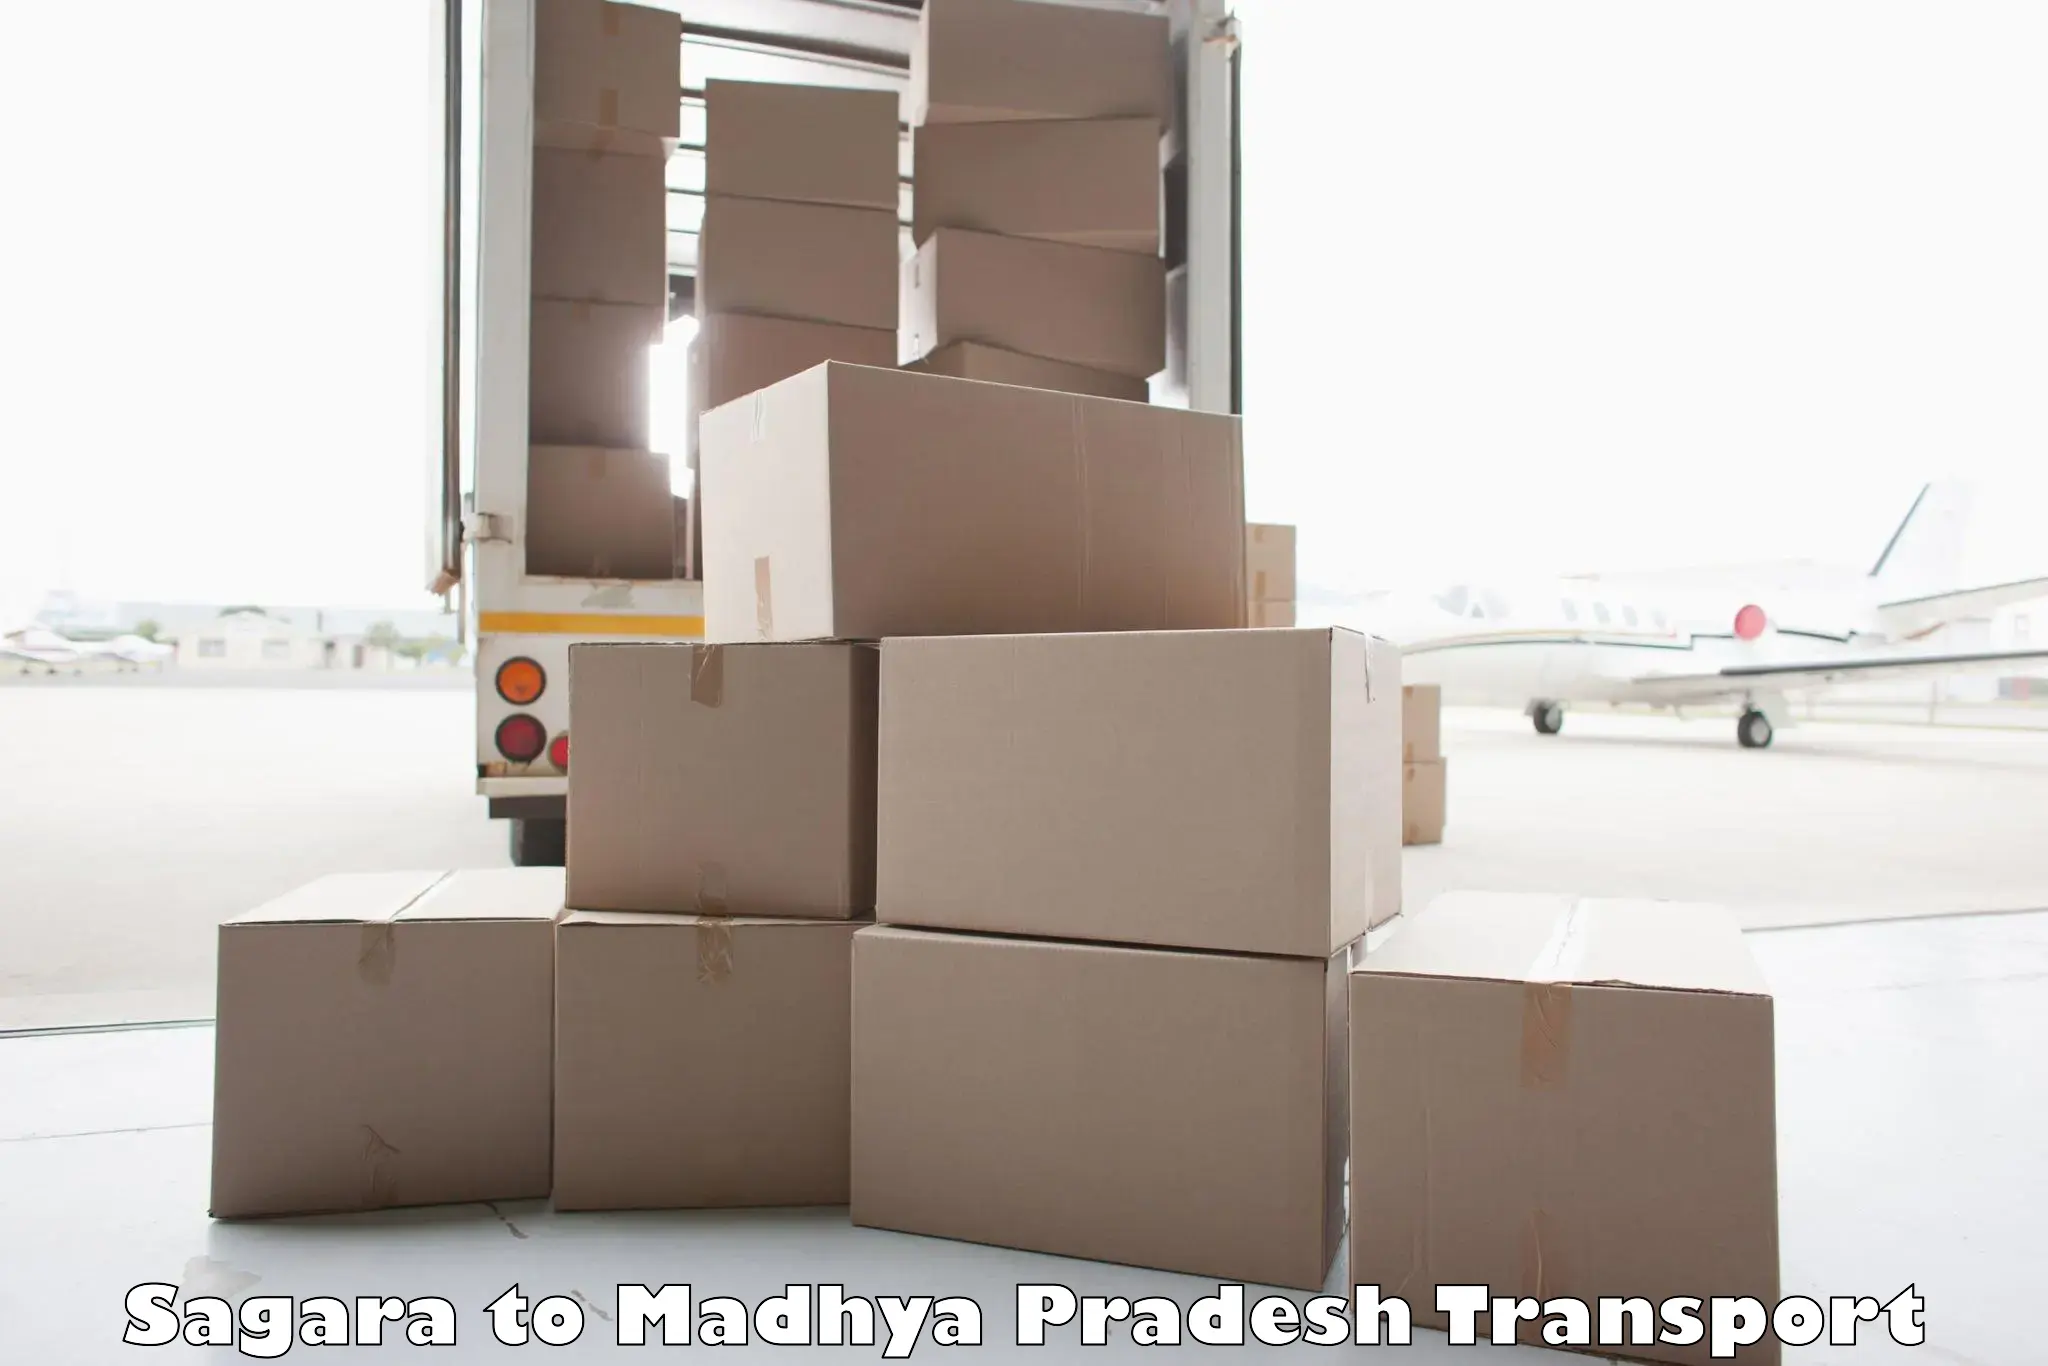 Vehicle transport services Sagara to Pandhurna